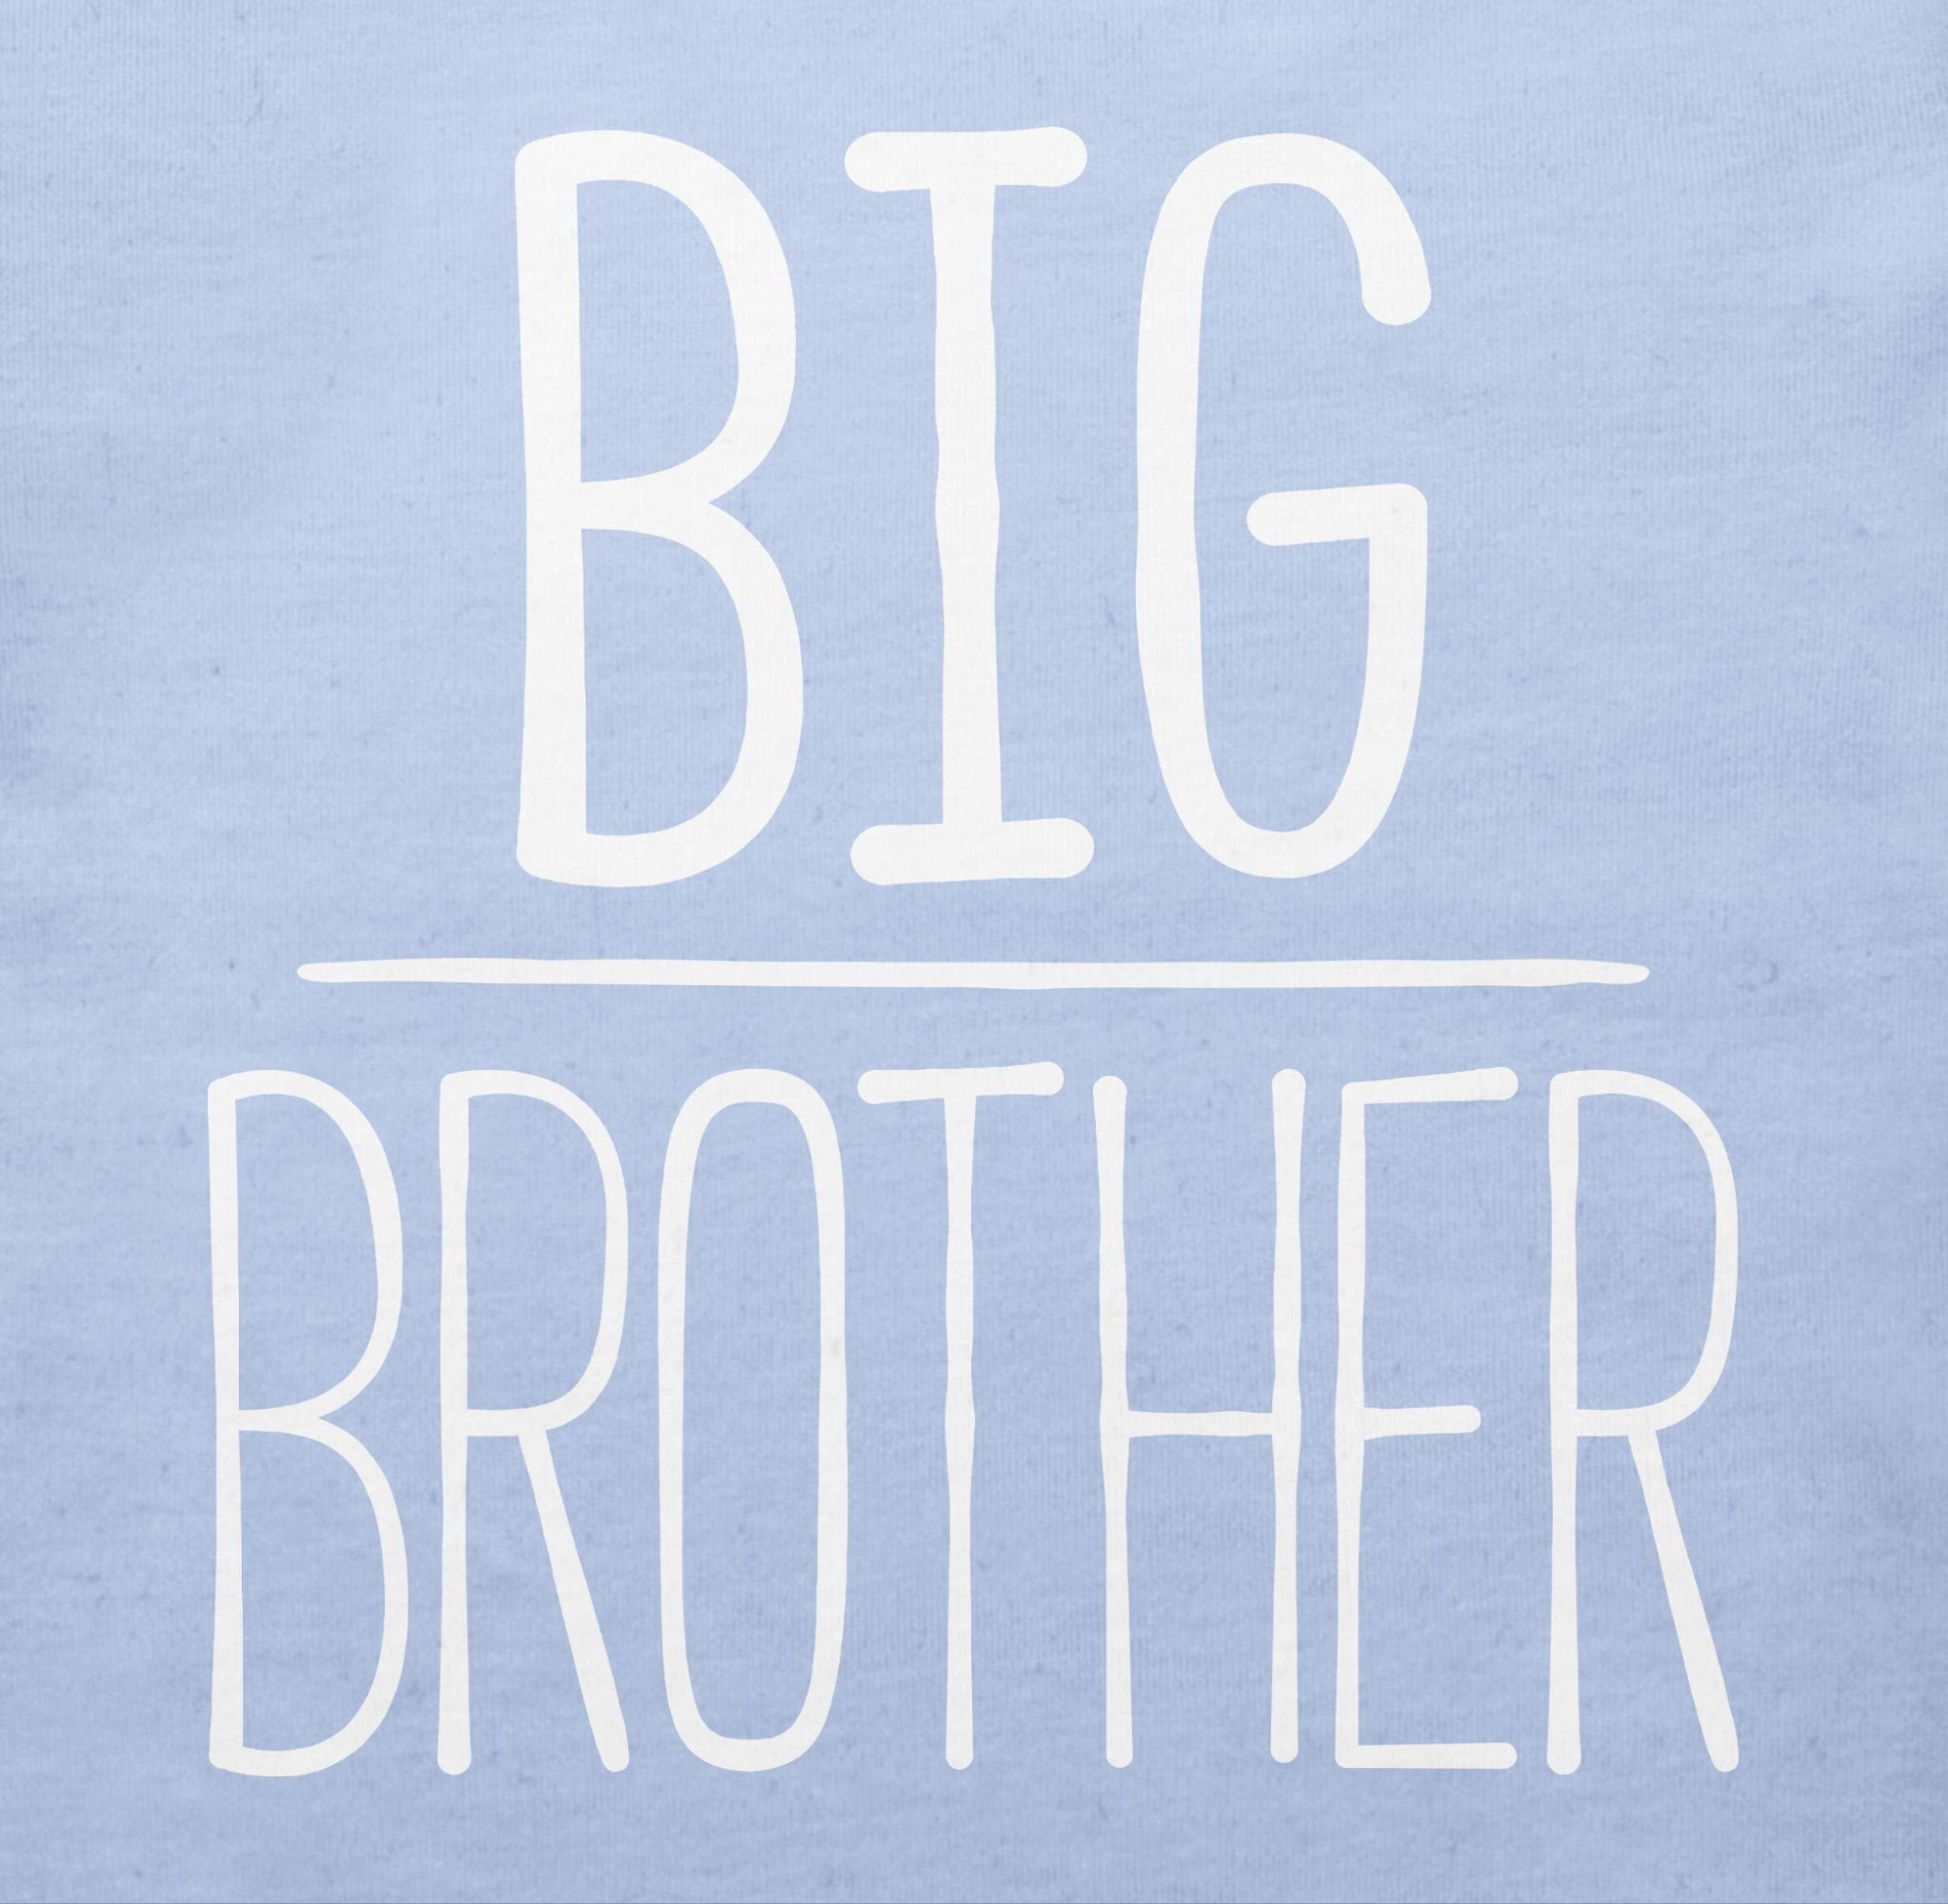 2 T-Shirt Bruder Großer Big Shirtracer Brother Babyblau